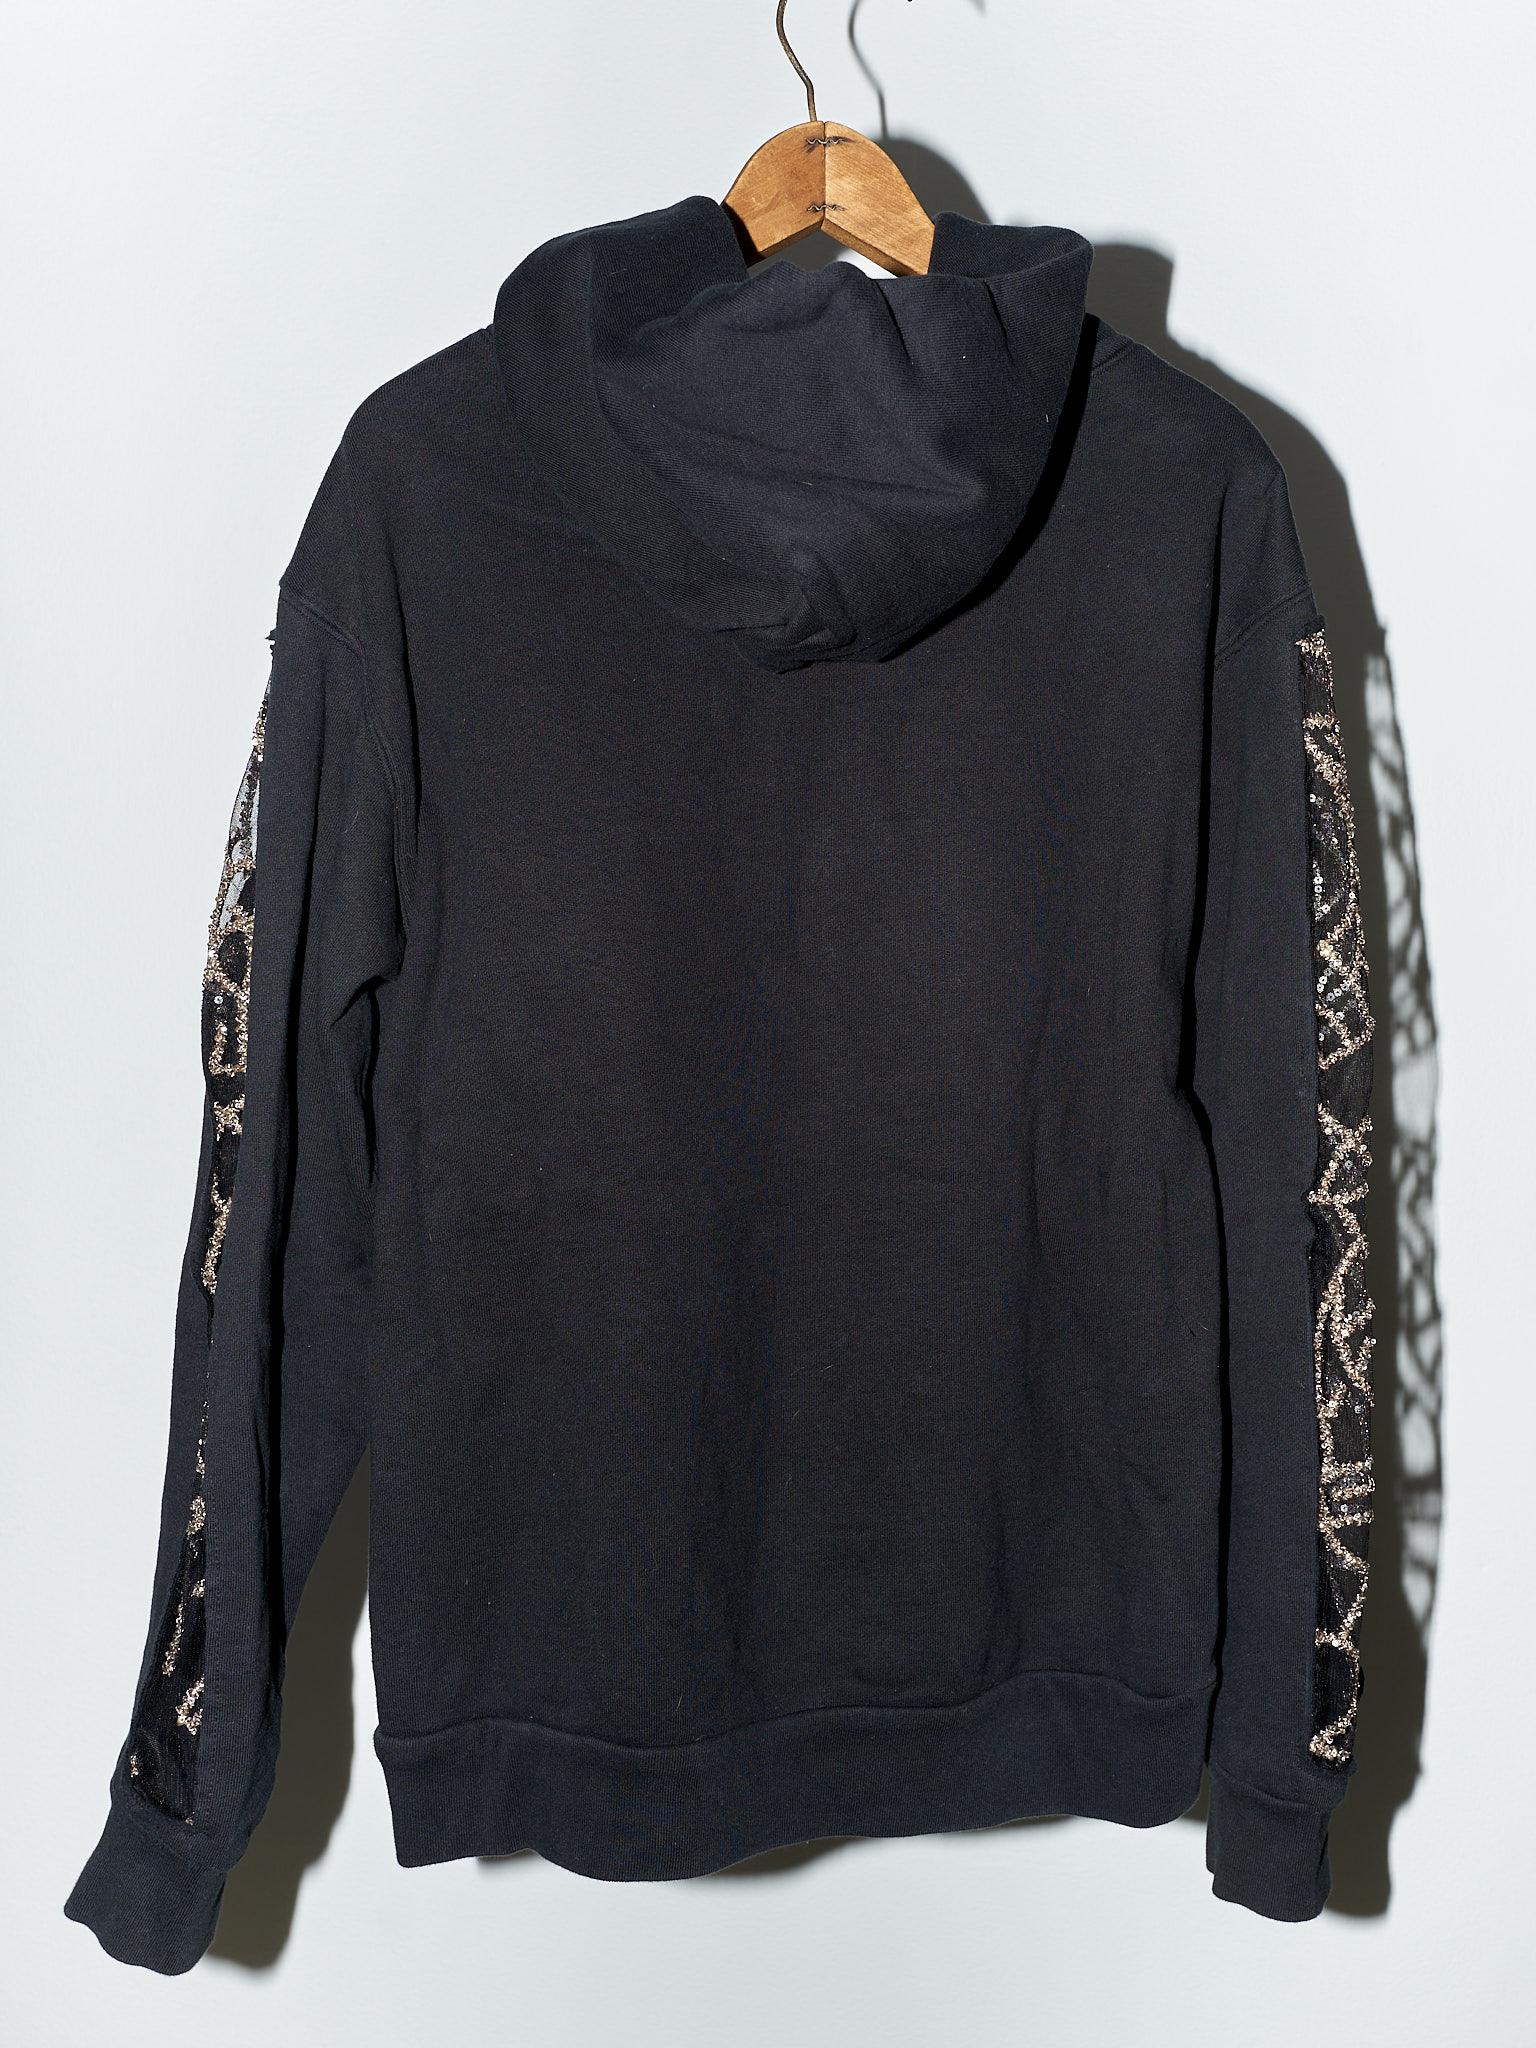 Black Hoodie Sweatshirt Transparent Sheer Mesh Chrystal Embroidery J Dauphin 5